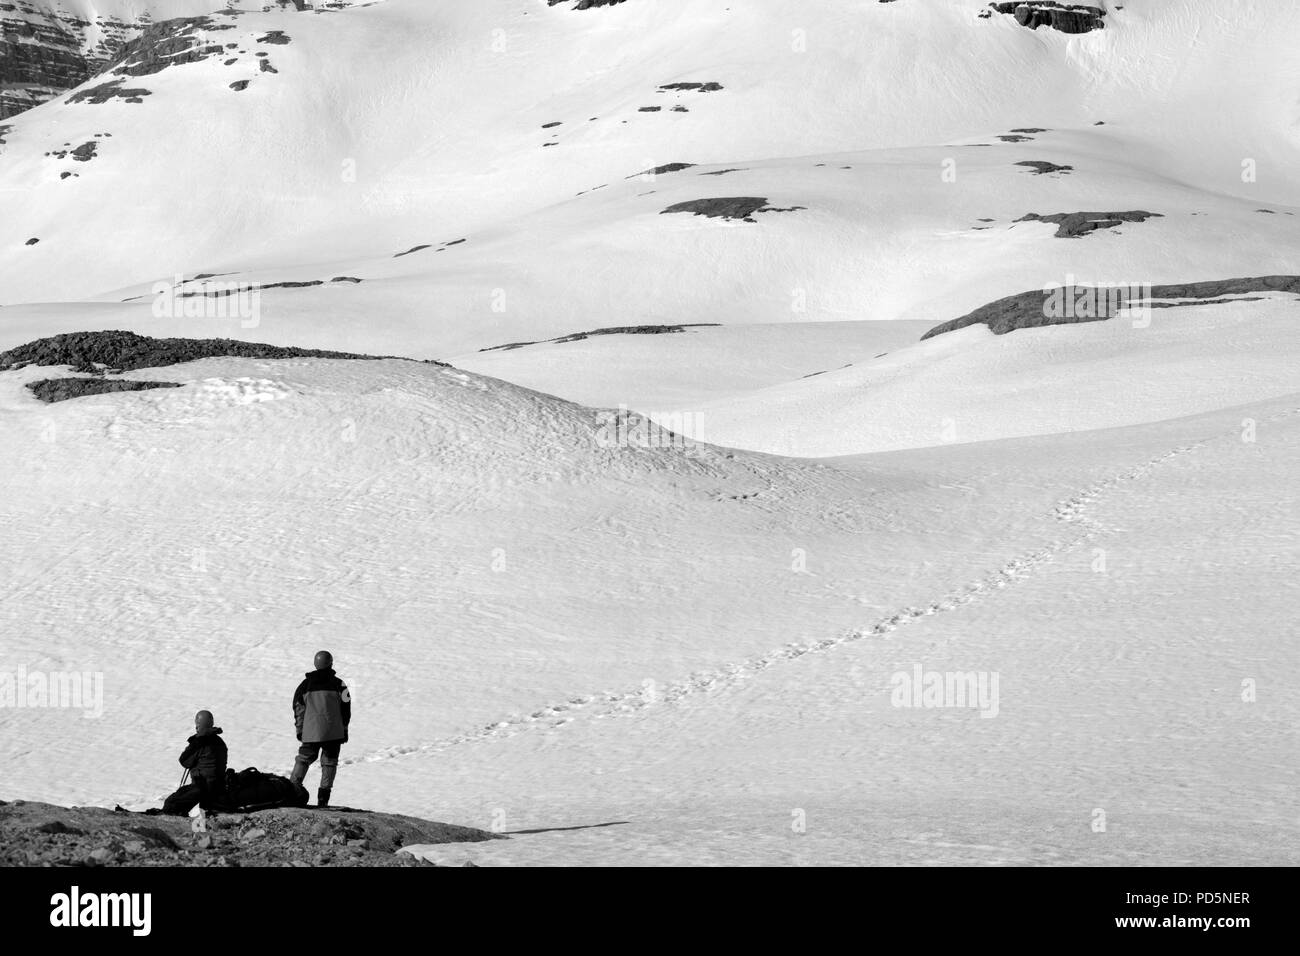 Deux randonneurs sur halte dans la montagne enneigée. Paysage aux tons noir et blanc. Banque D'Images